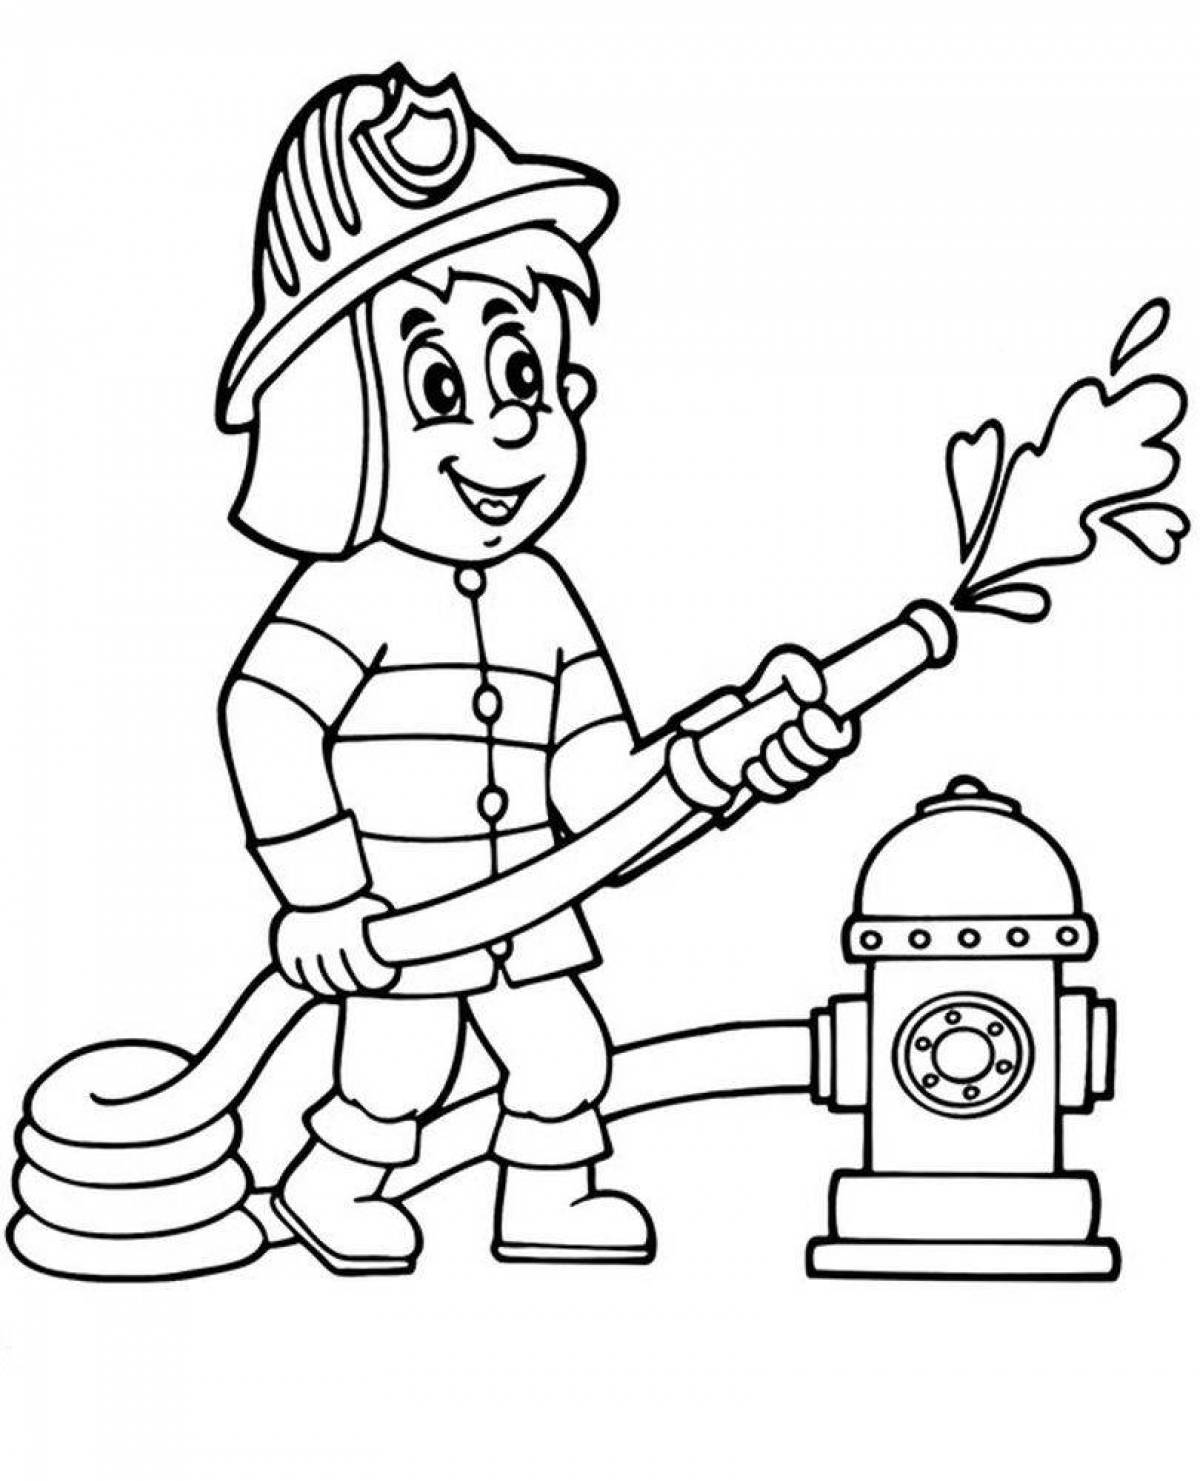 Firefighter for children #2